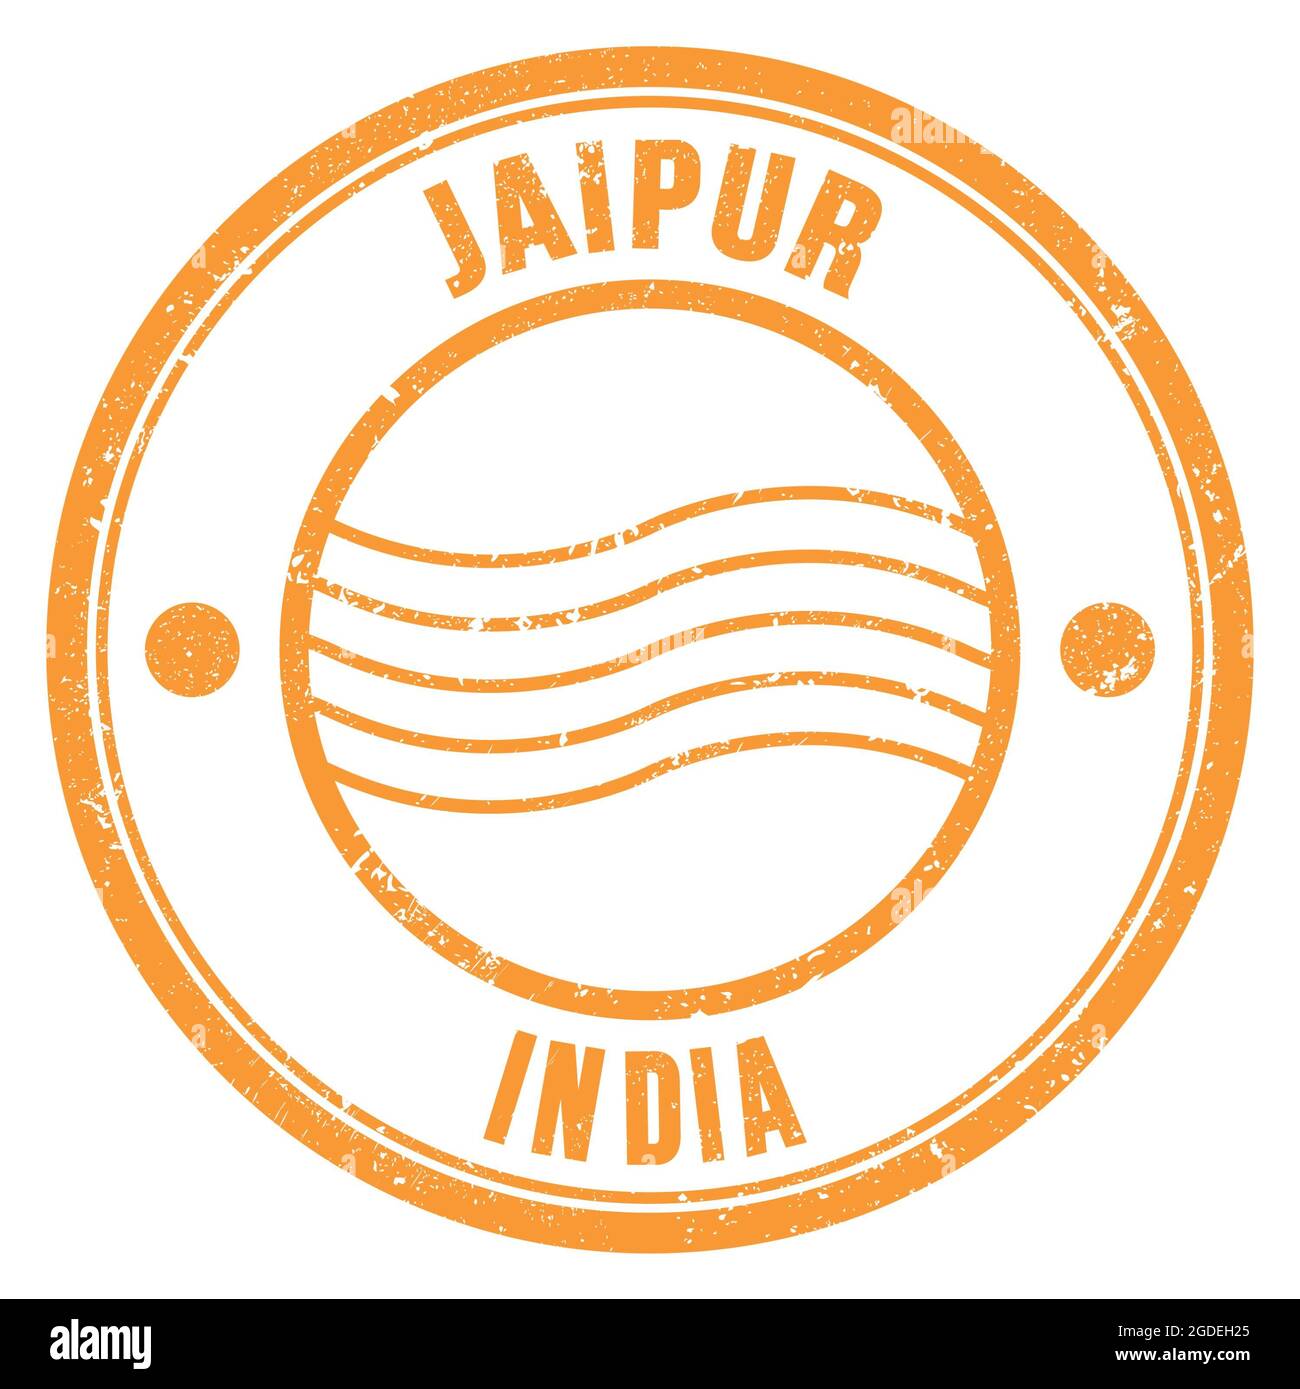 JAIPUR - INDIA, parole scritte sul francobollo rotondo arancione Foto Stock